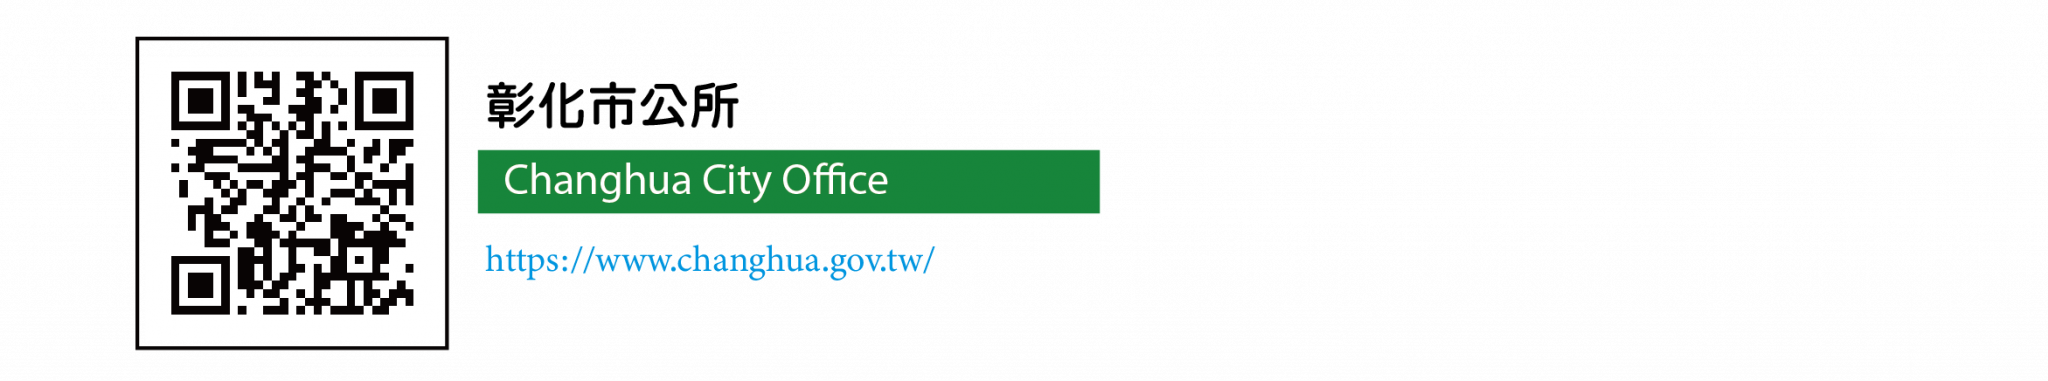 國立彰化師範大學語文中心提供彰化市公所的網站連結